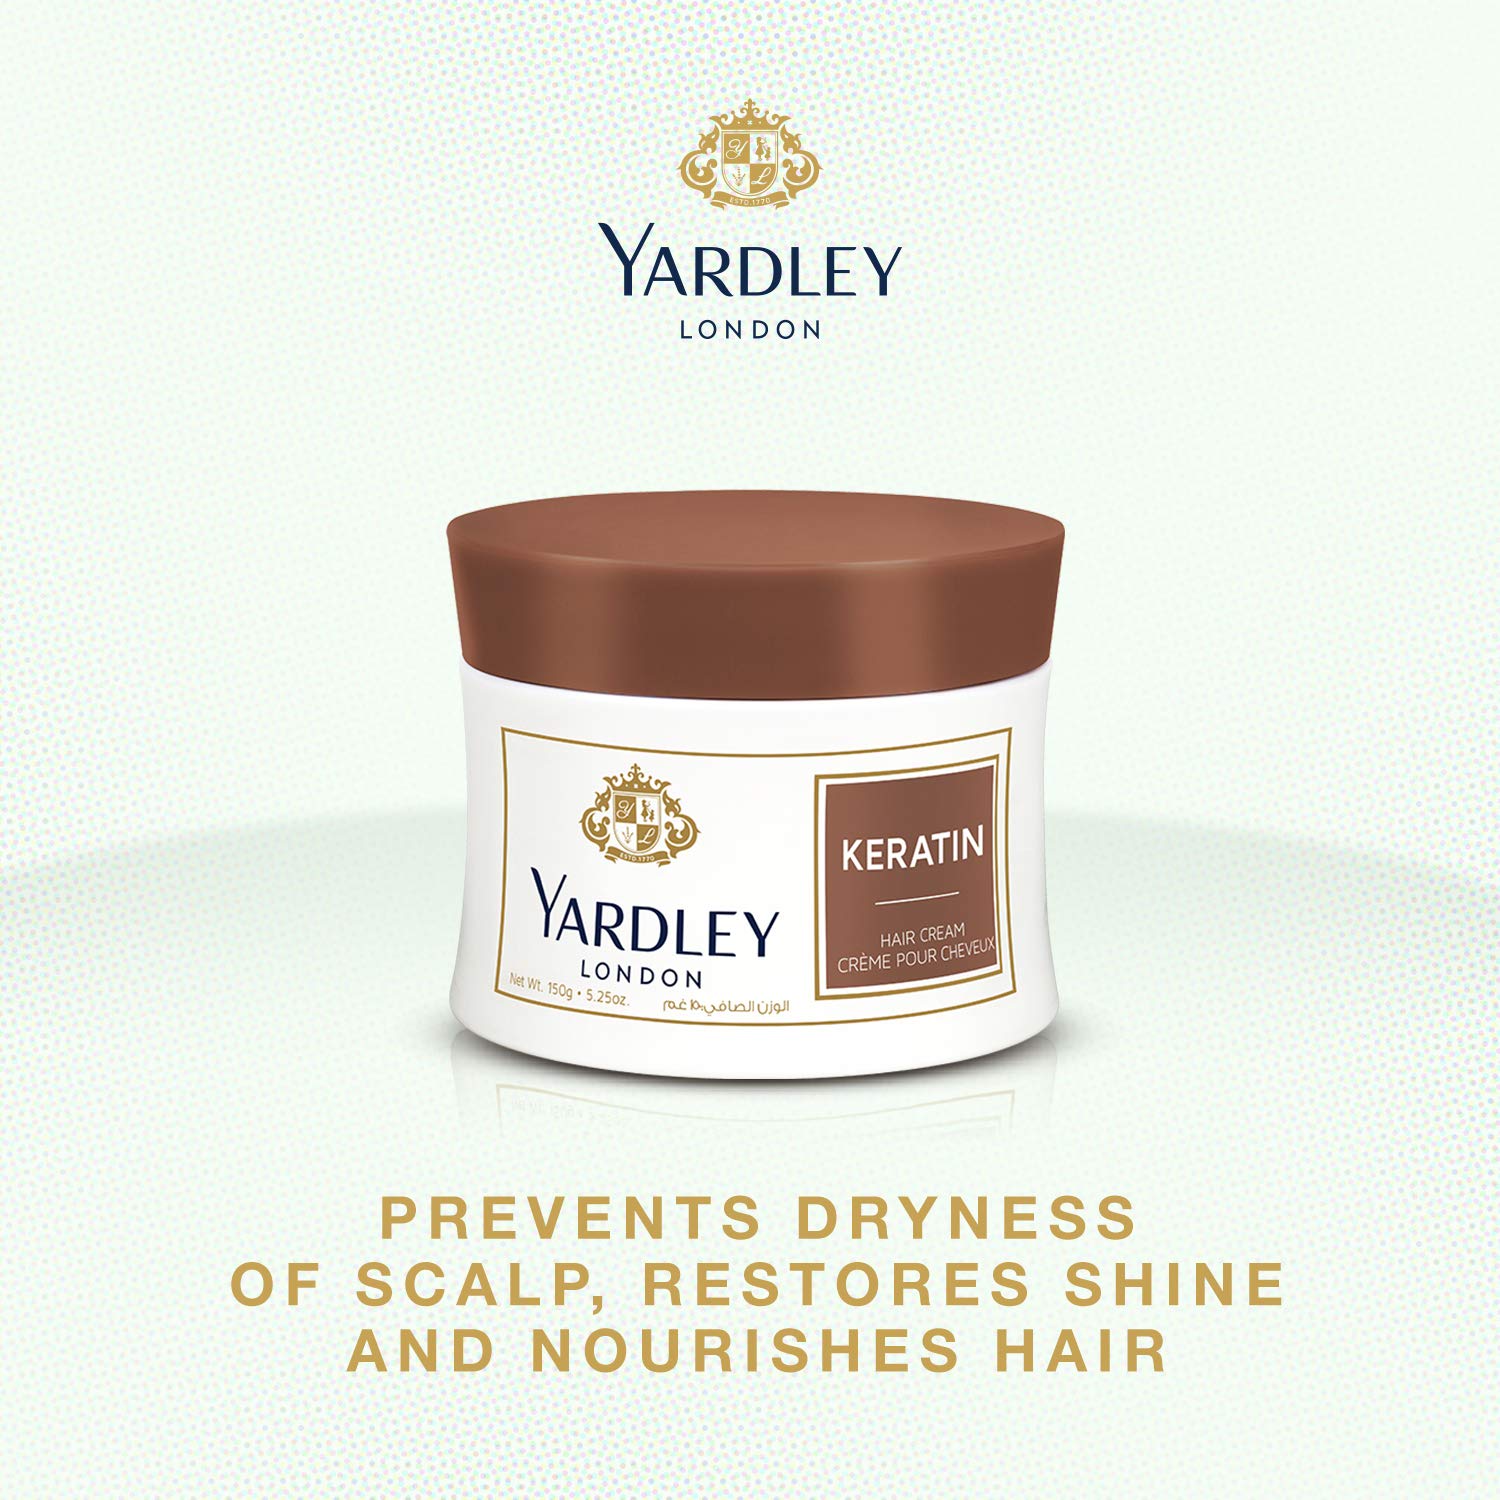 Yardley London Keratin Hair Cream (150 g) Beautiful